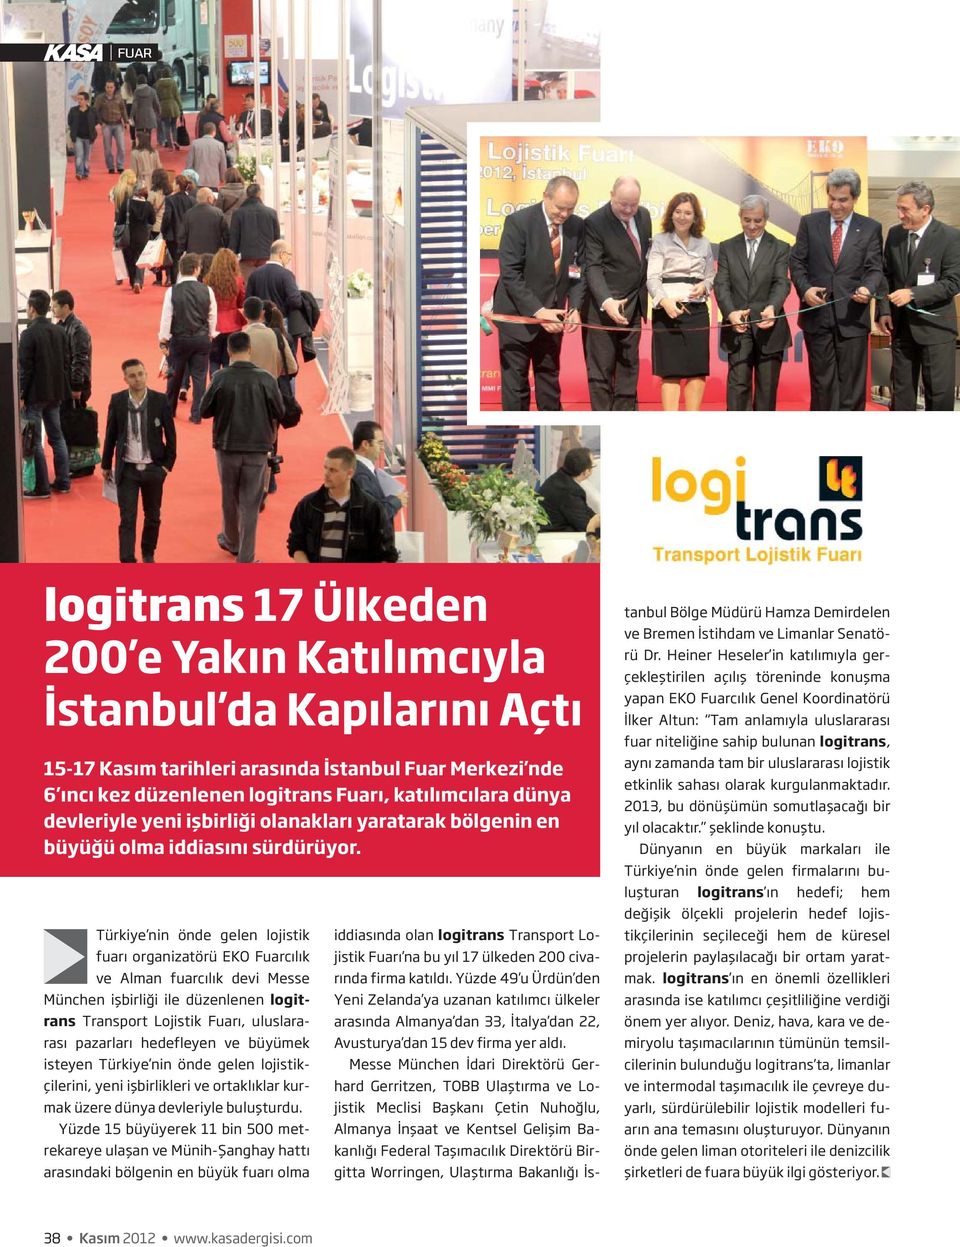 Türkiye nin önde gelen lojistik fuarı organizatörü EKO Fuarcılık ve Alman fuarcılık devi Messe München işbirliği ile düzenlenen logitrans Transport Lojistik Fuarı, uluslararası pazarları hedefleyen